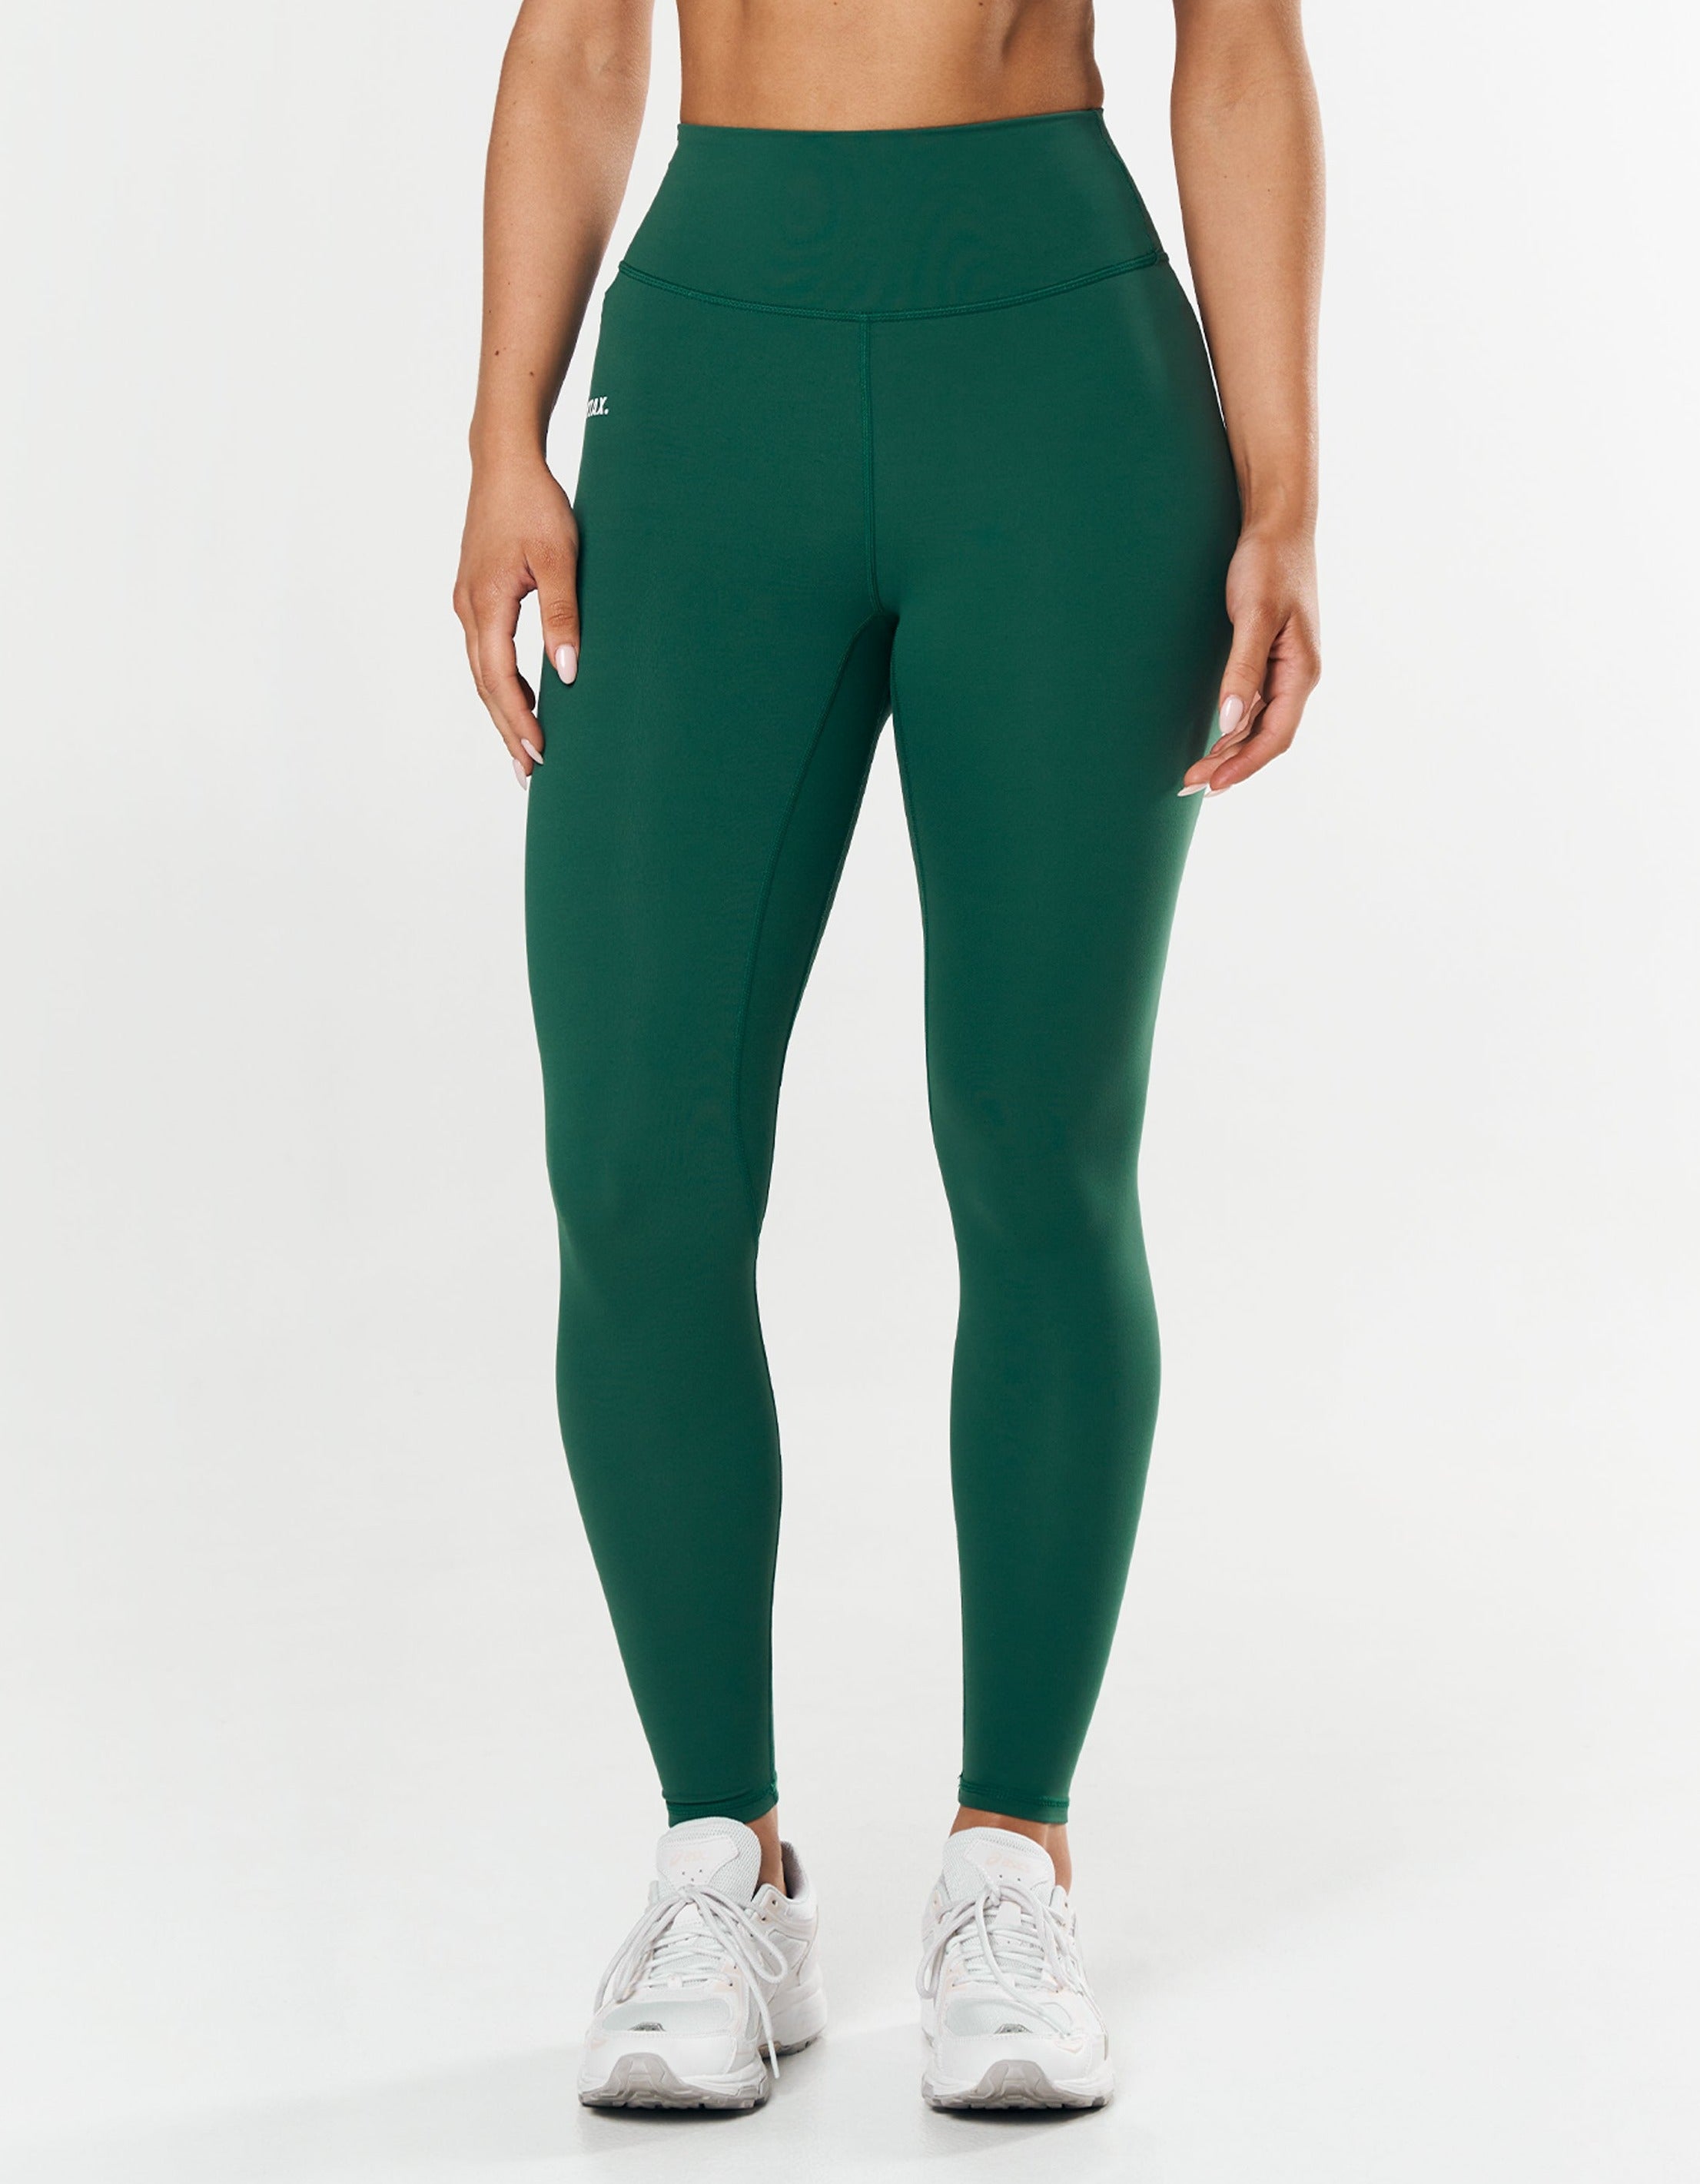 stax-full-length-tights-nandex-original-aspen-green